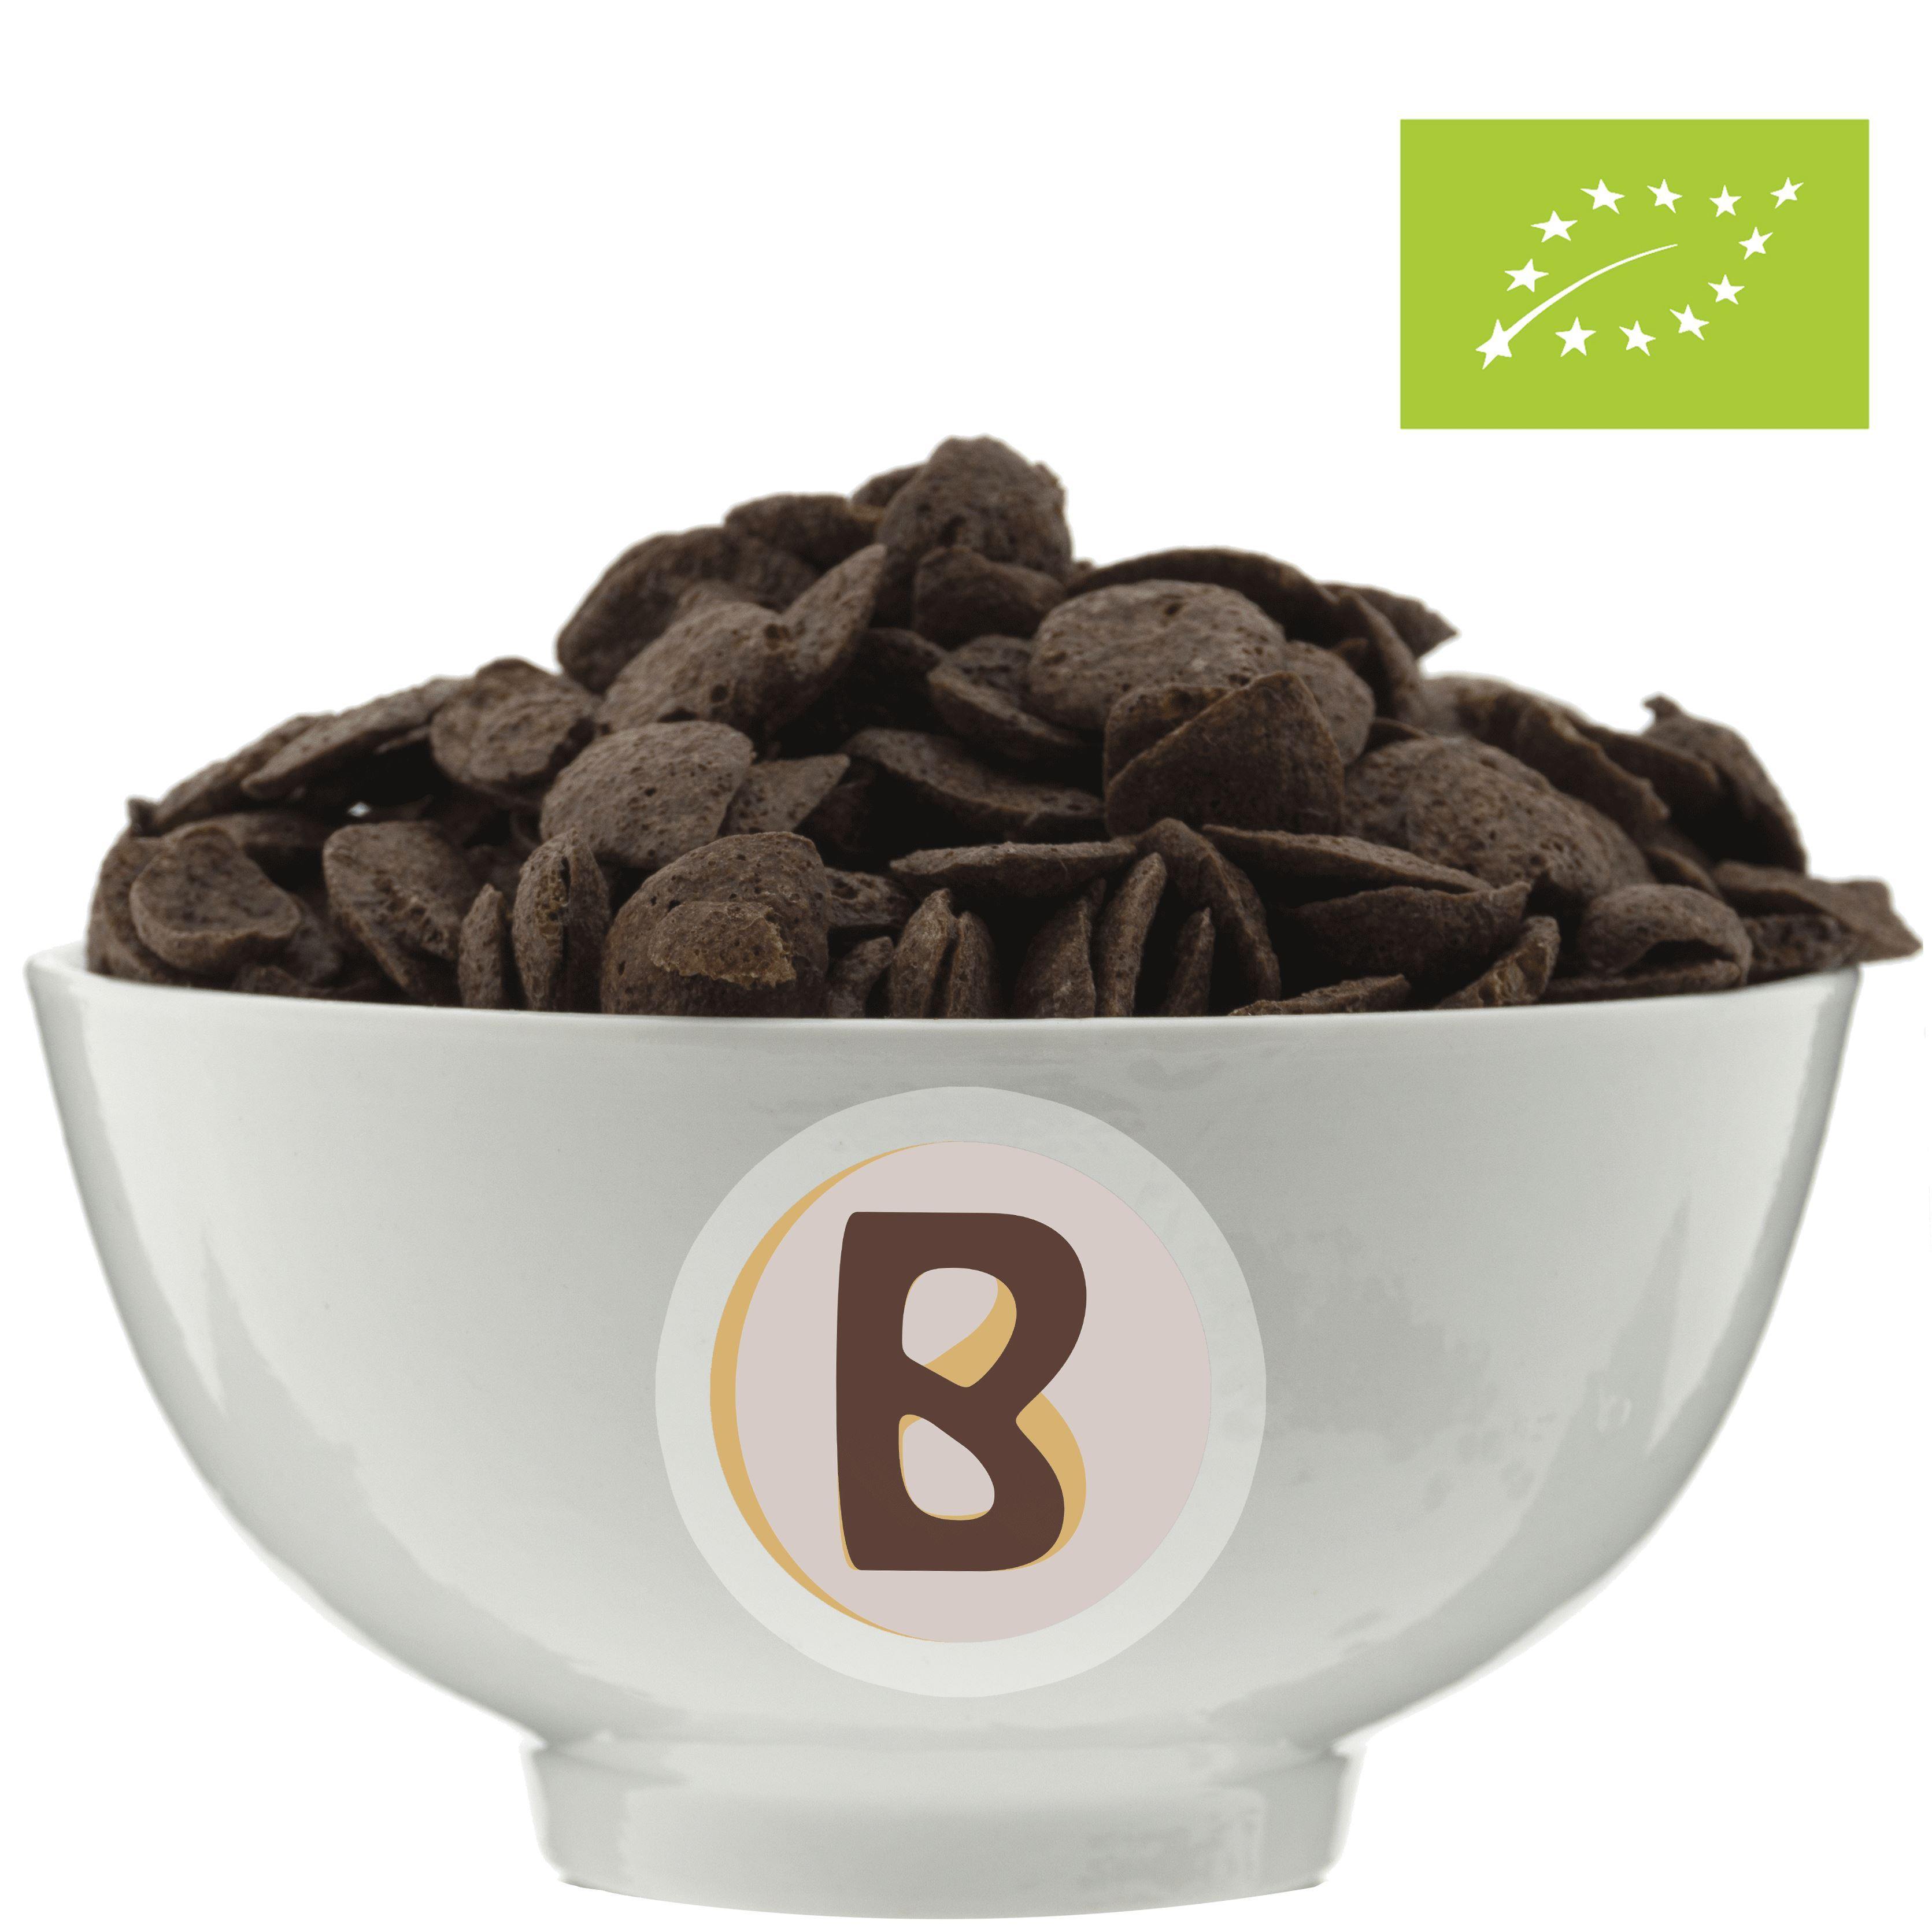 Chocoshells Conchas Crujientes Chocolateadas Ecológicas Cereales Bioandelos 